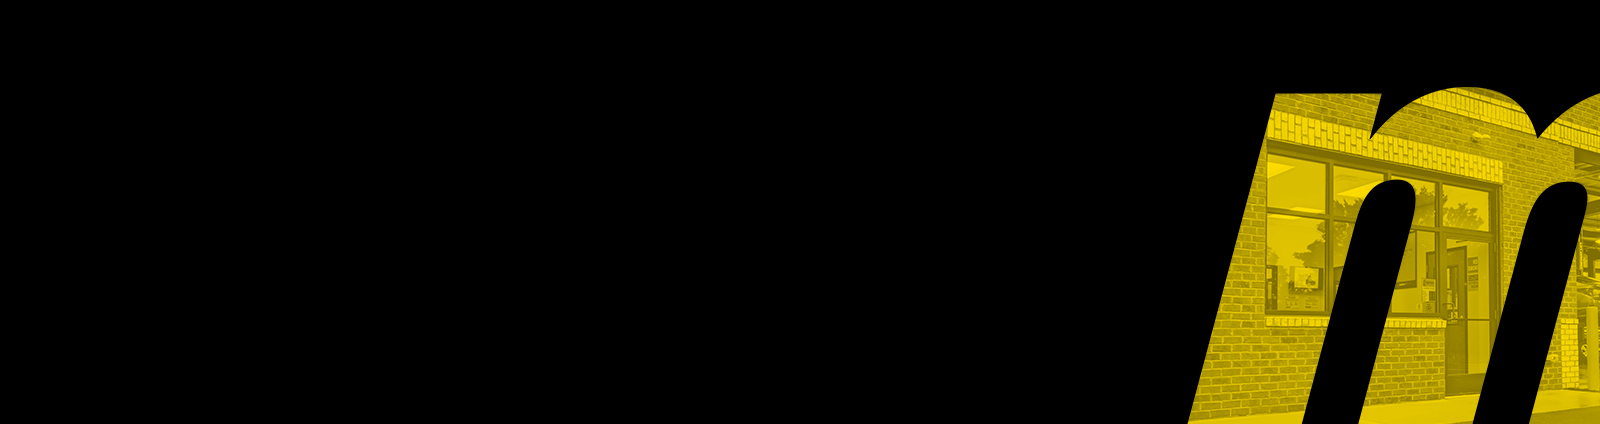 Meineke Logo - Meineke Franchise Resale Program | Meineke.com